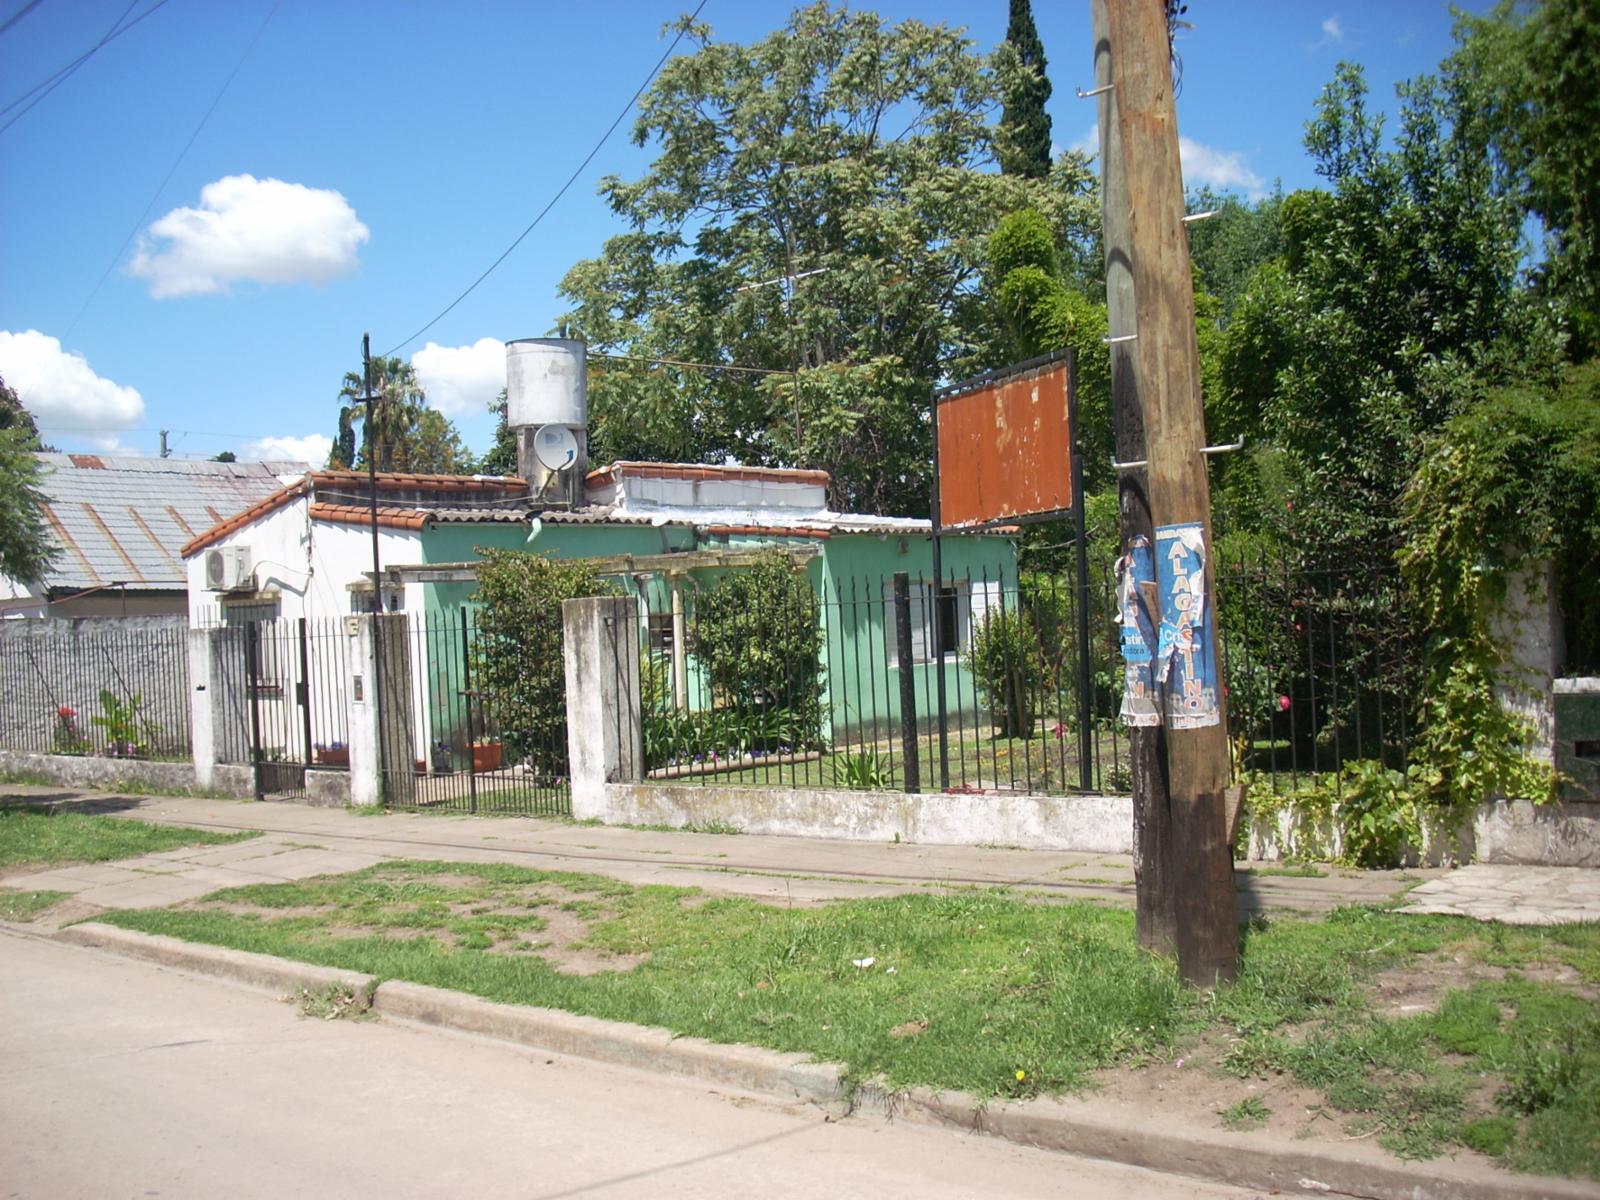 Dos lotes con una casa en muy buena zona de Moreno